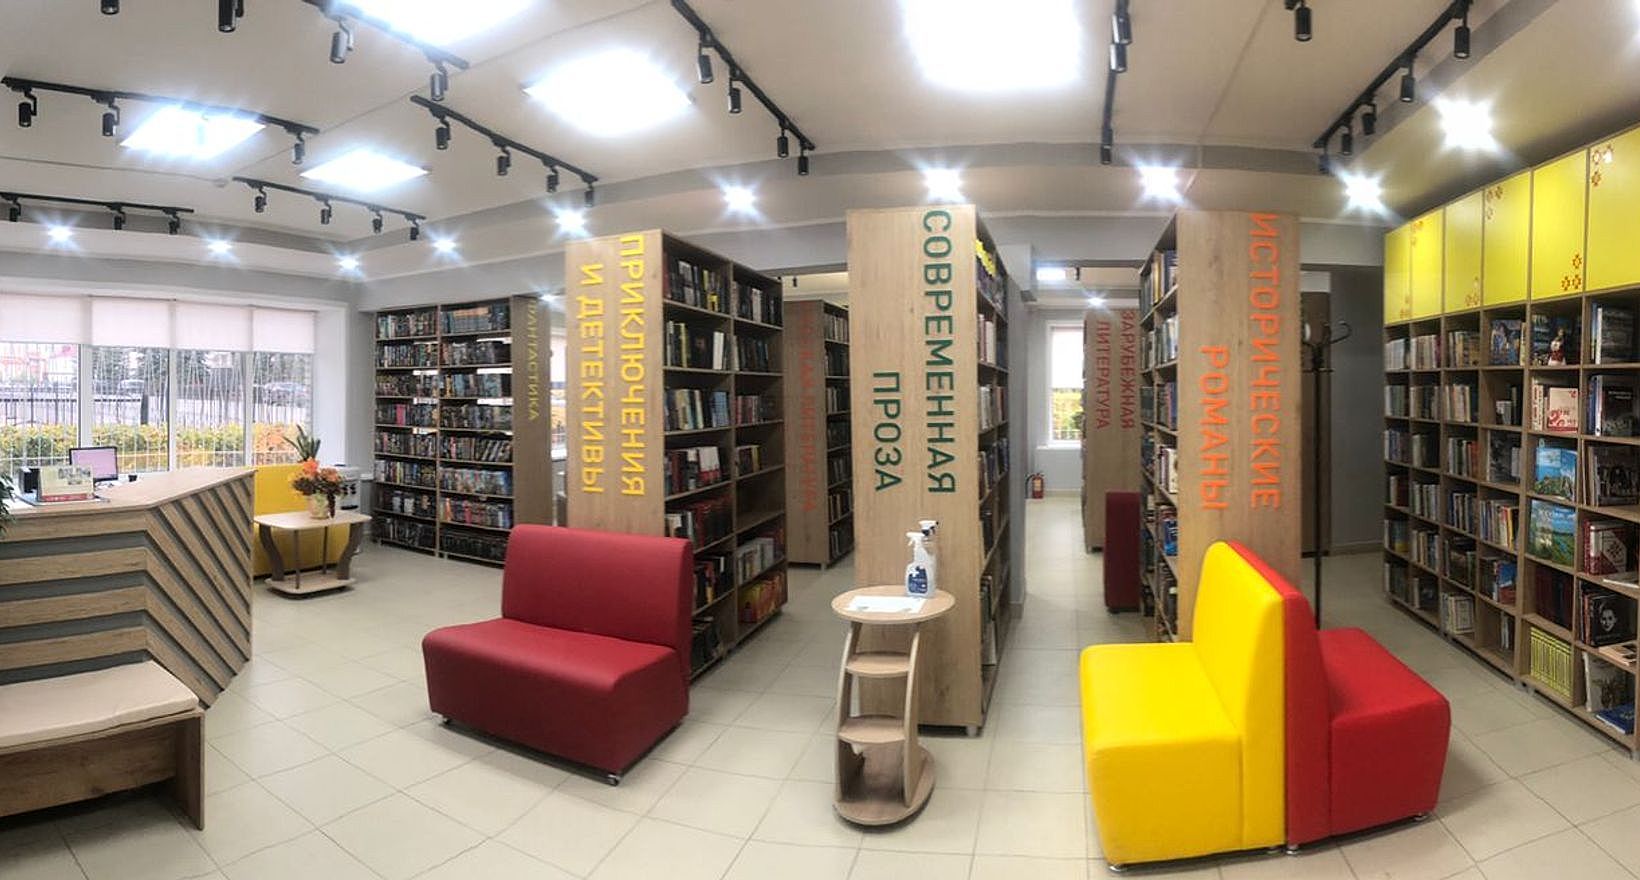 Модернизация библиотек в рамках национального проекта культура